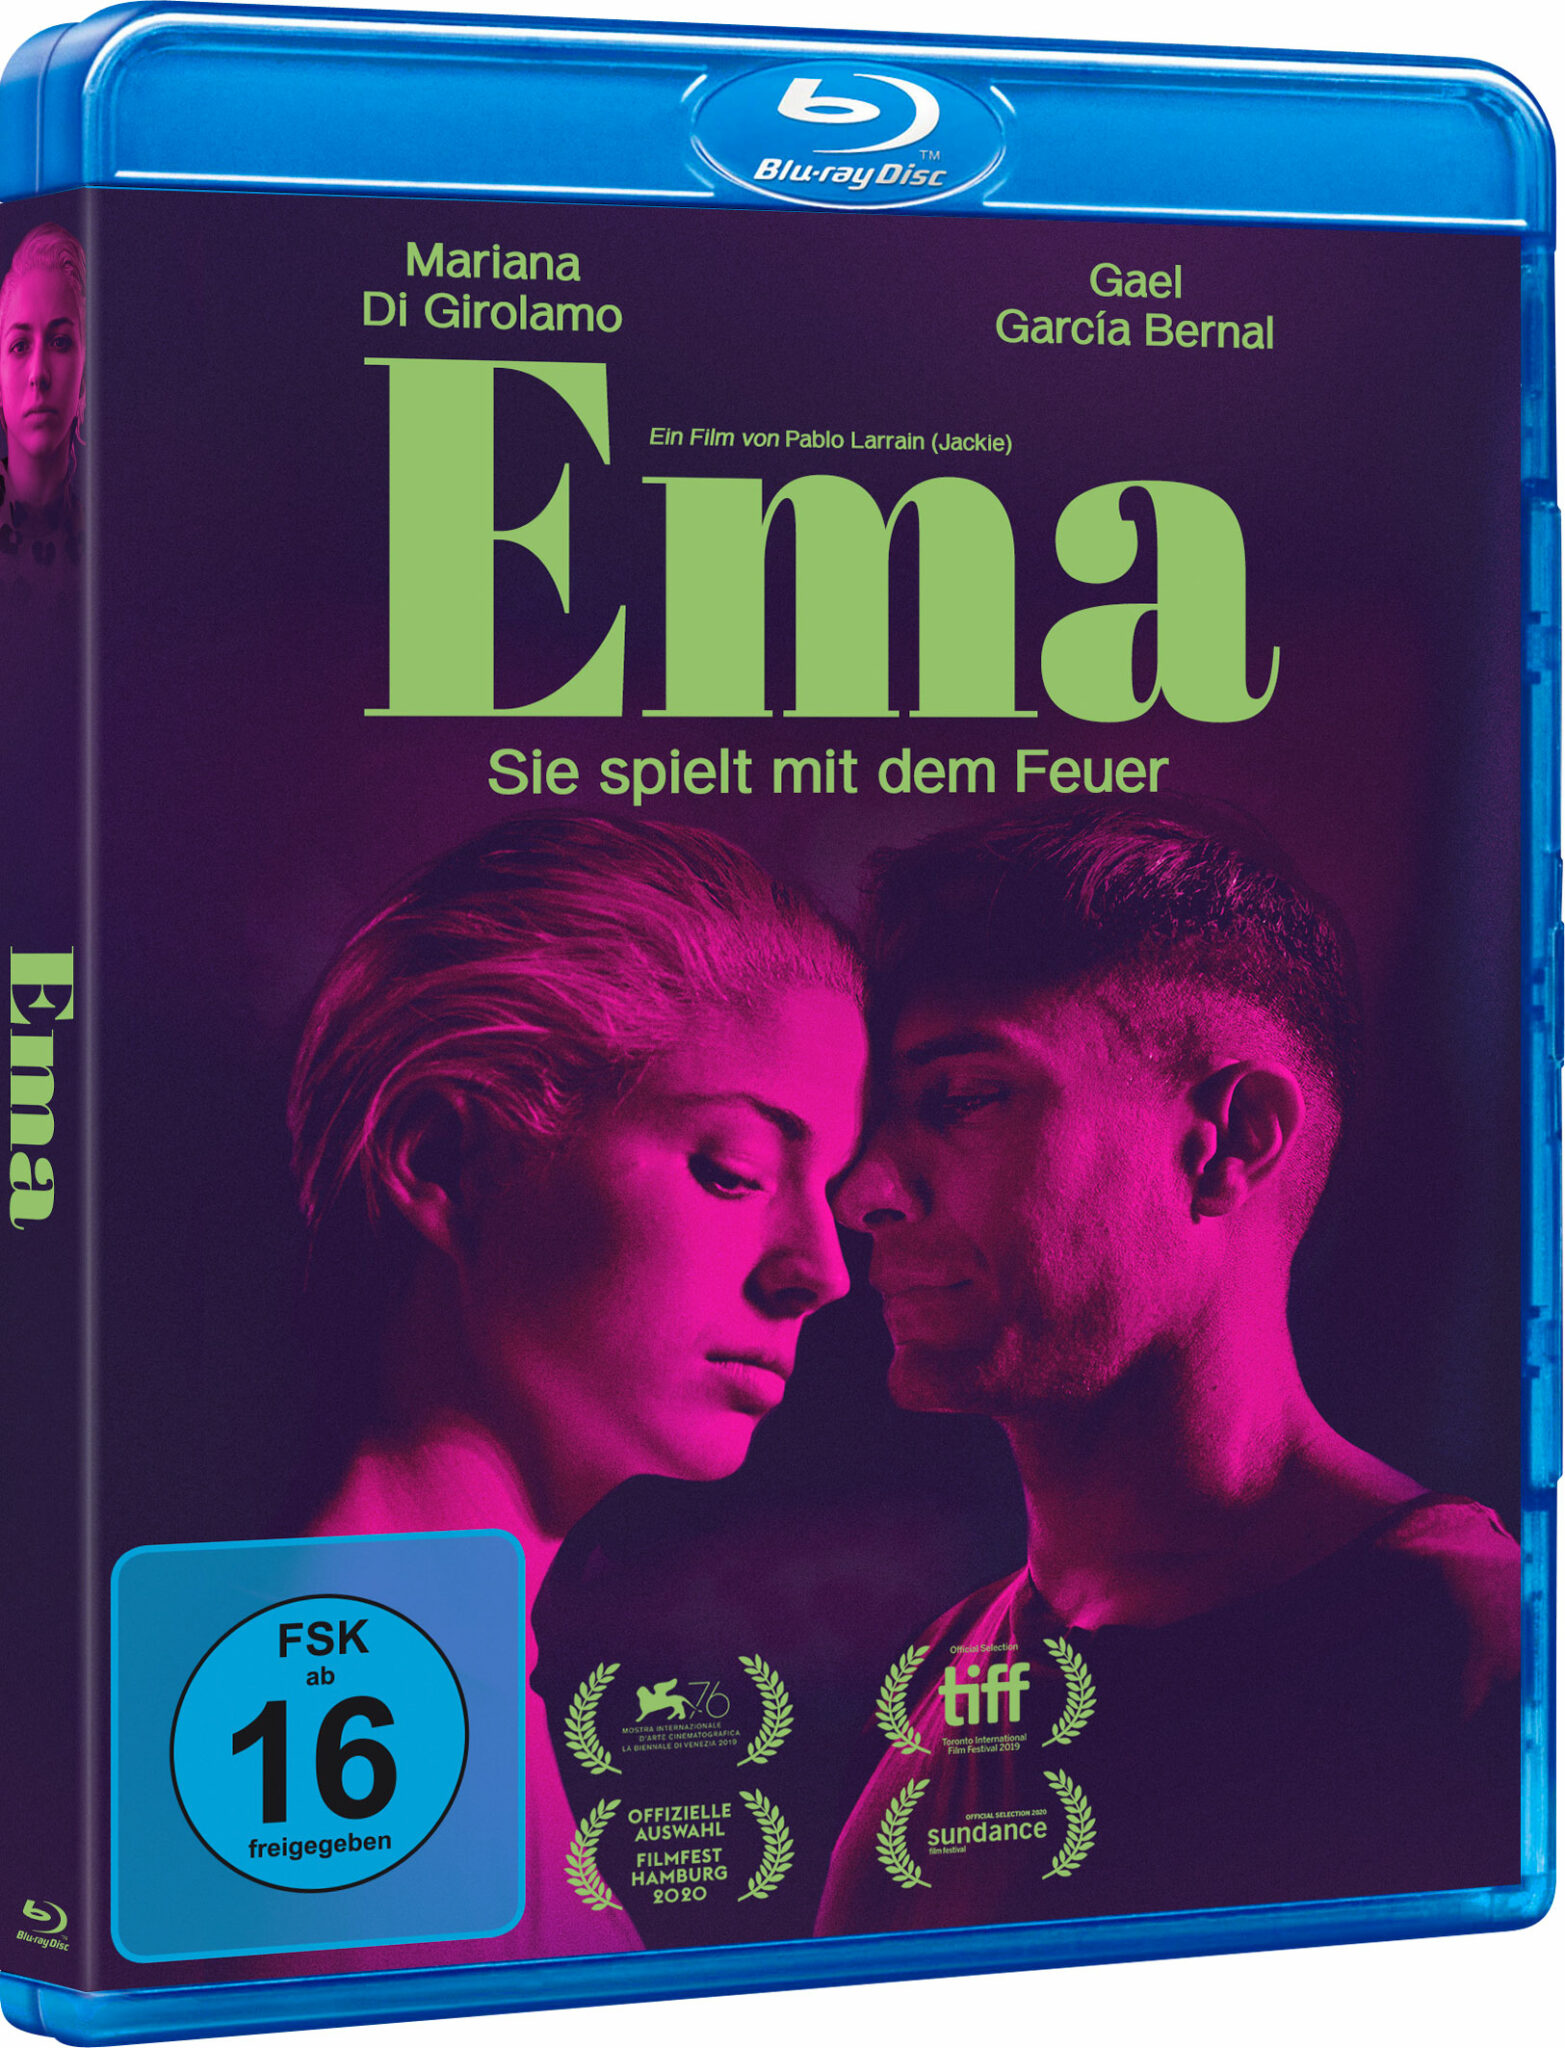 Das Blu-ray-Cover von Ema zeigt die Protagonistin, gespielt von Mariana Di Girolamo gemeinsam mit Gastón (Gael Garcia Bernal) getaucht in lila-pinke Farbe. Der Titel ist in grüner Schrift gehalten.